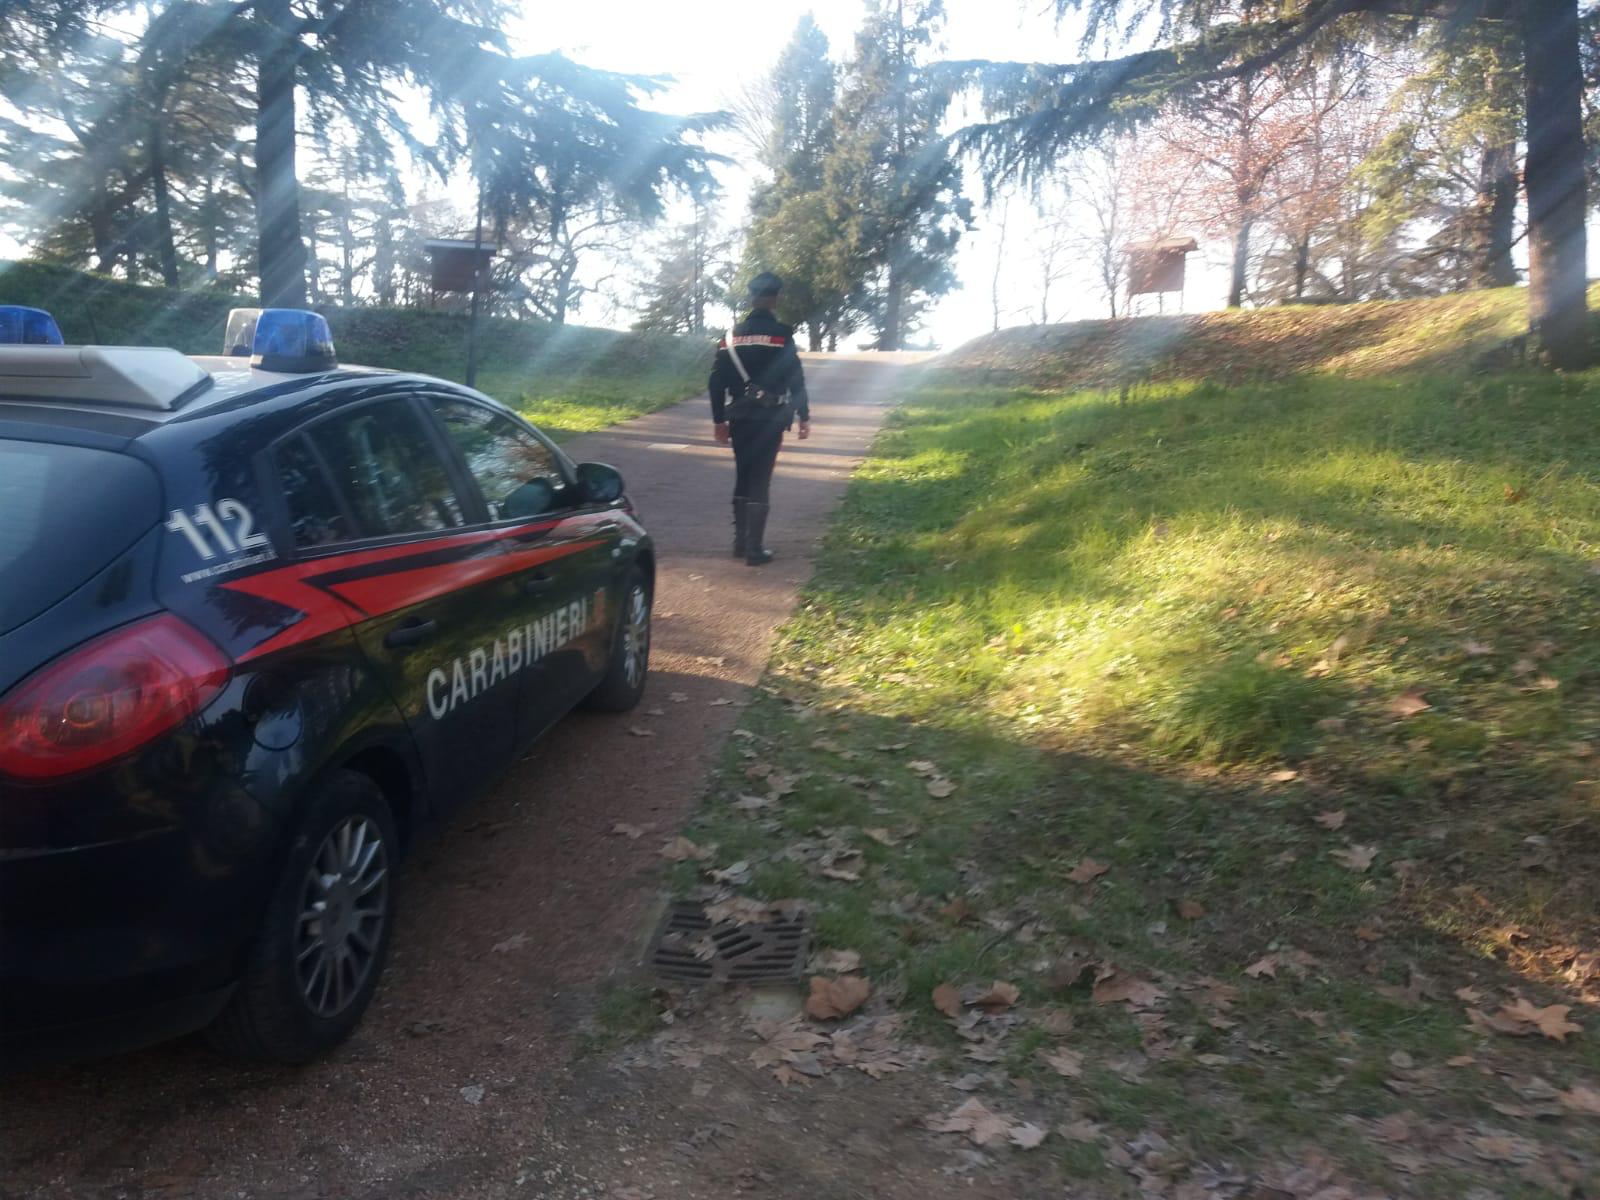 Week end di fuoco: tre arresti in città. Droga, evasione e furto aggravato, i carabinieri della stazione veronese hanno assicurato alla giustizia altre tre persone.